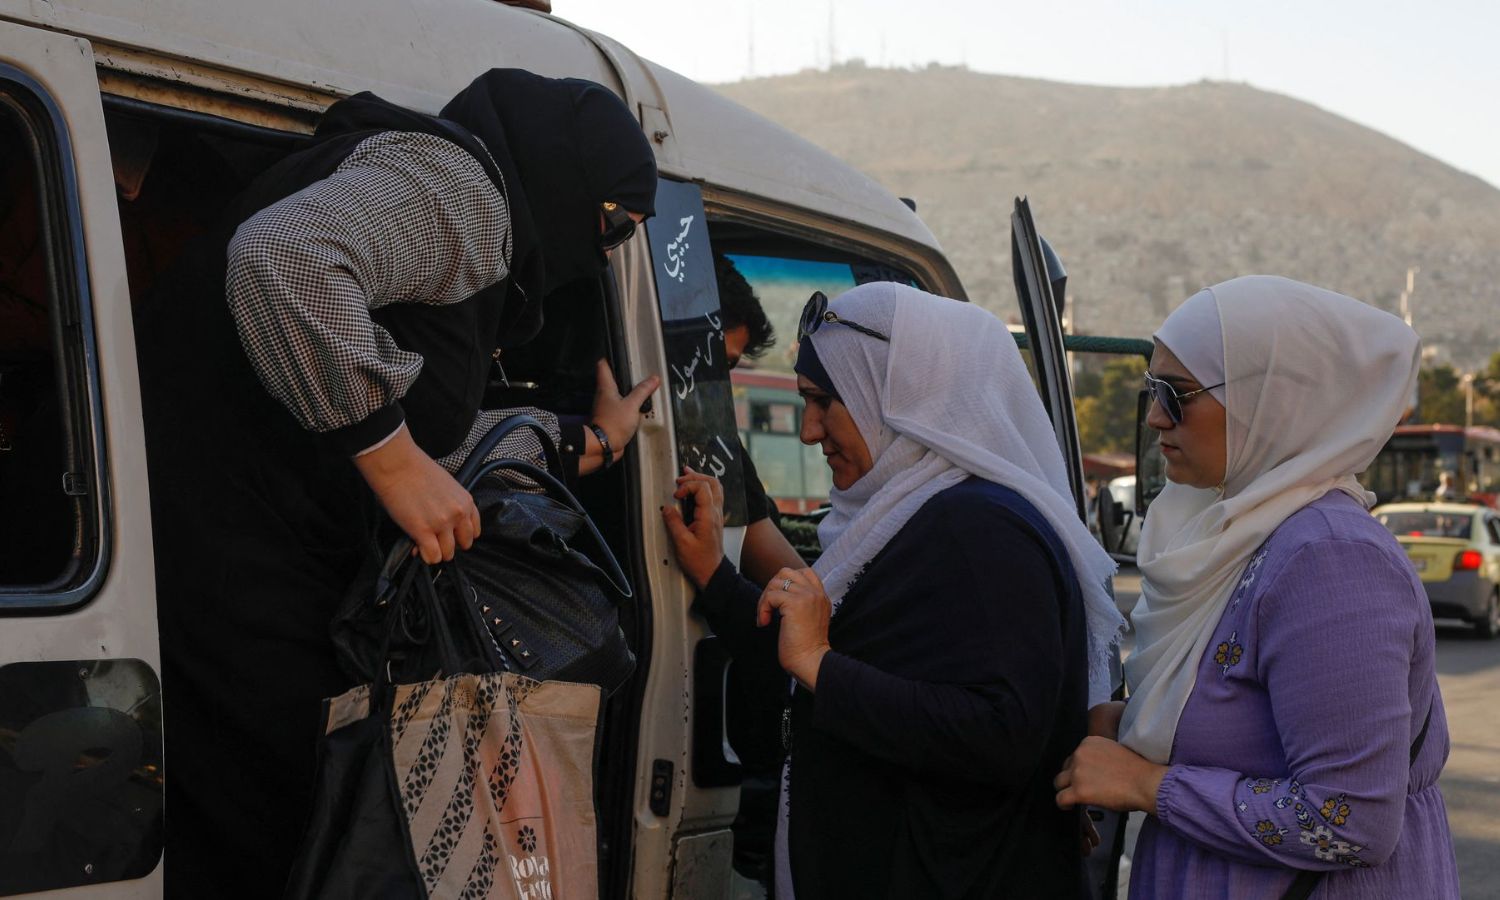 سيّدتان تتنظران نزول راكبة لتصعدا في "ميكروباص" بالعاصمة السورية دمشق- 20 من تموز 2022 (رويترز)